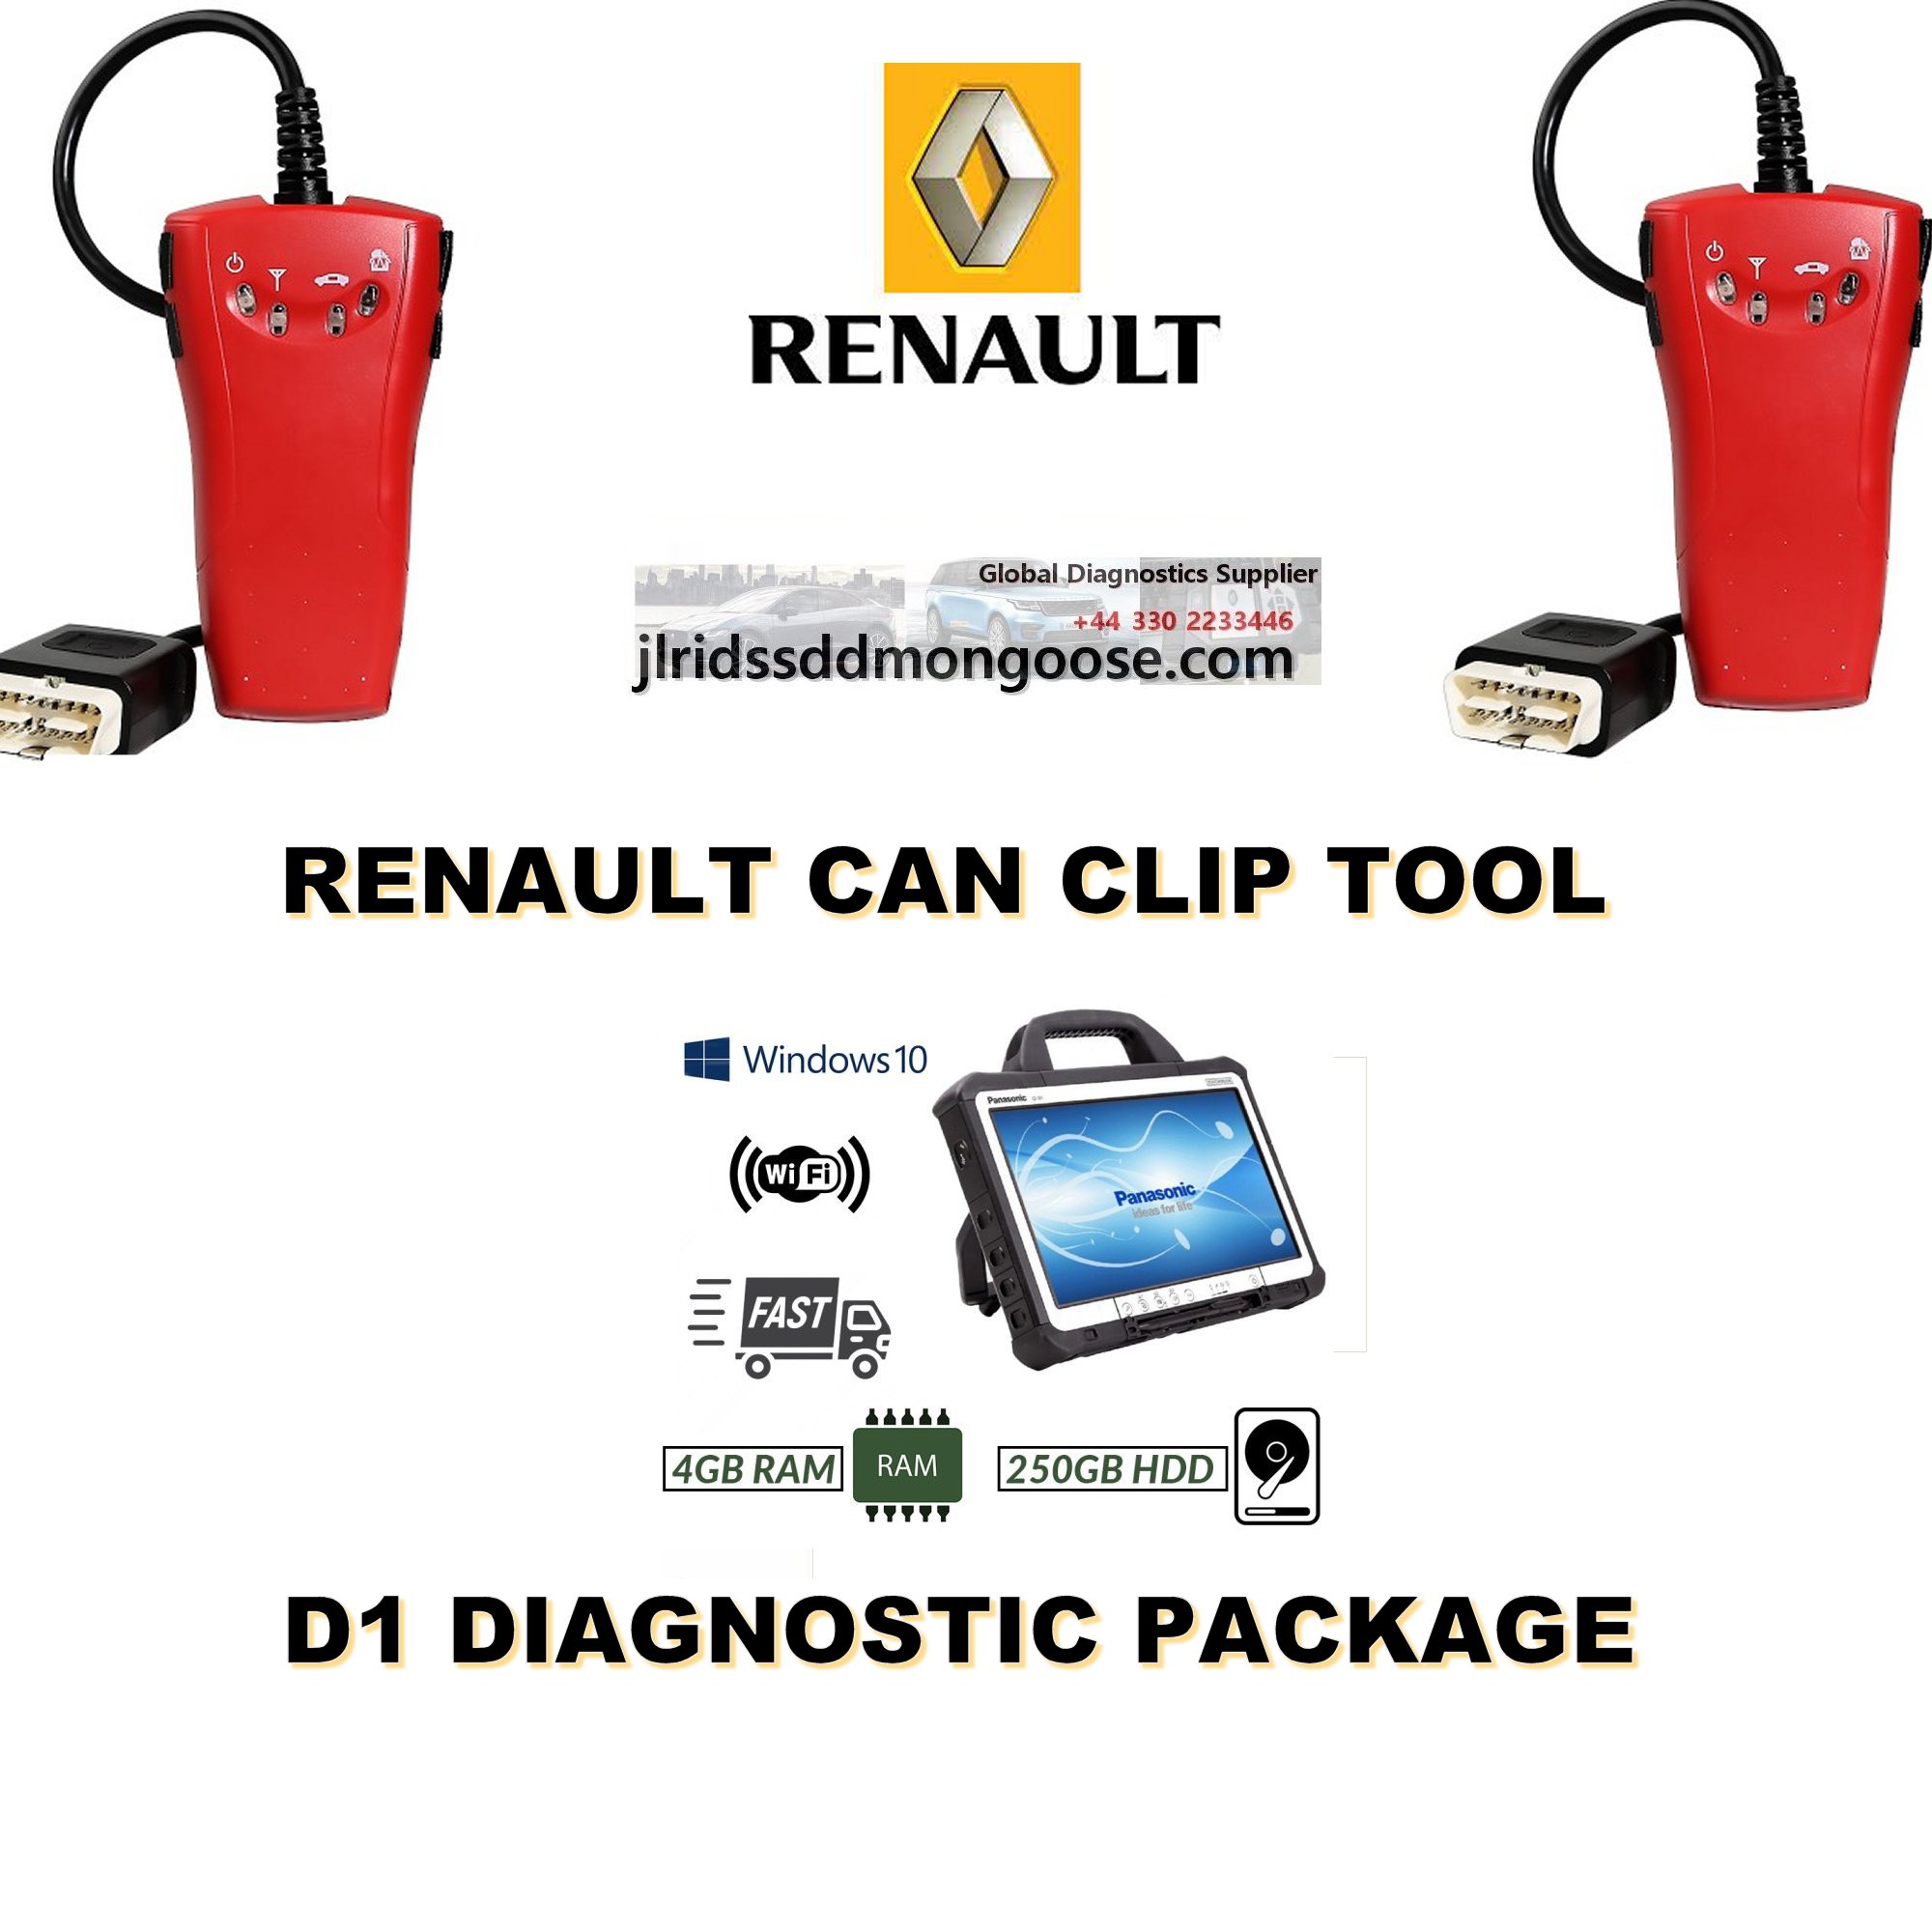 Renault CAN Clip car diagnostic tool